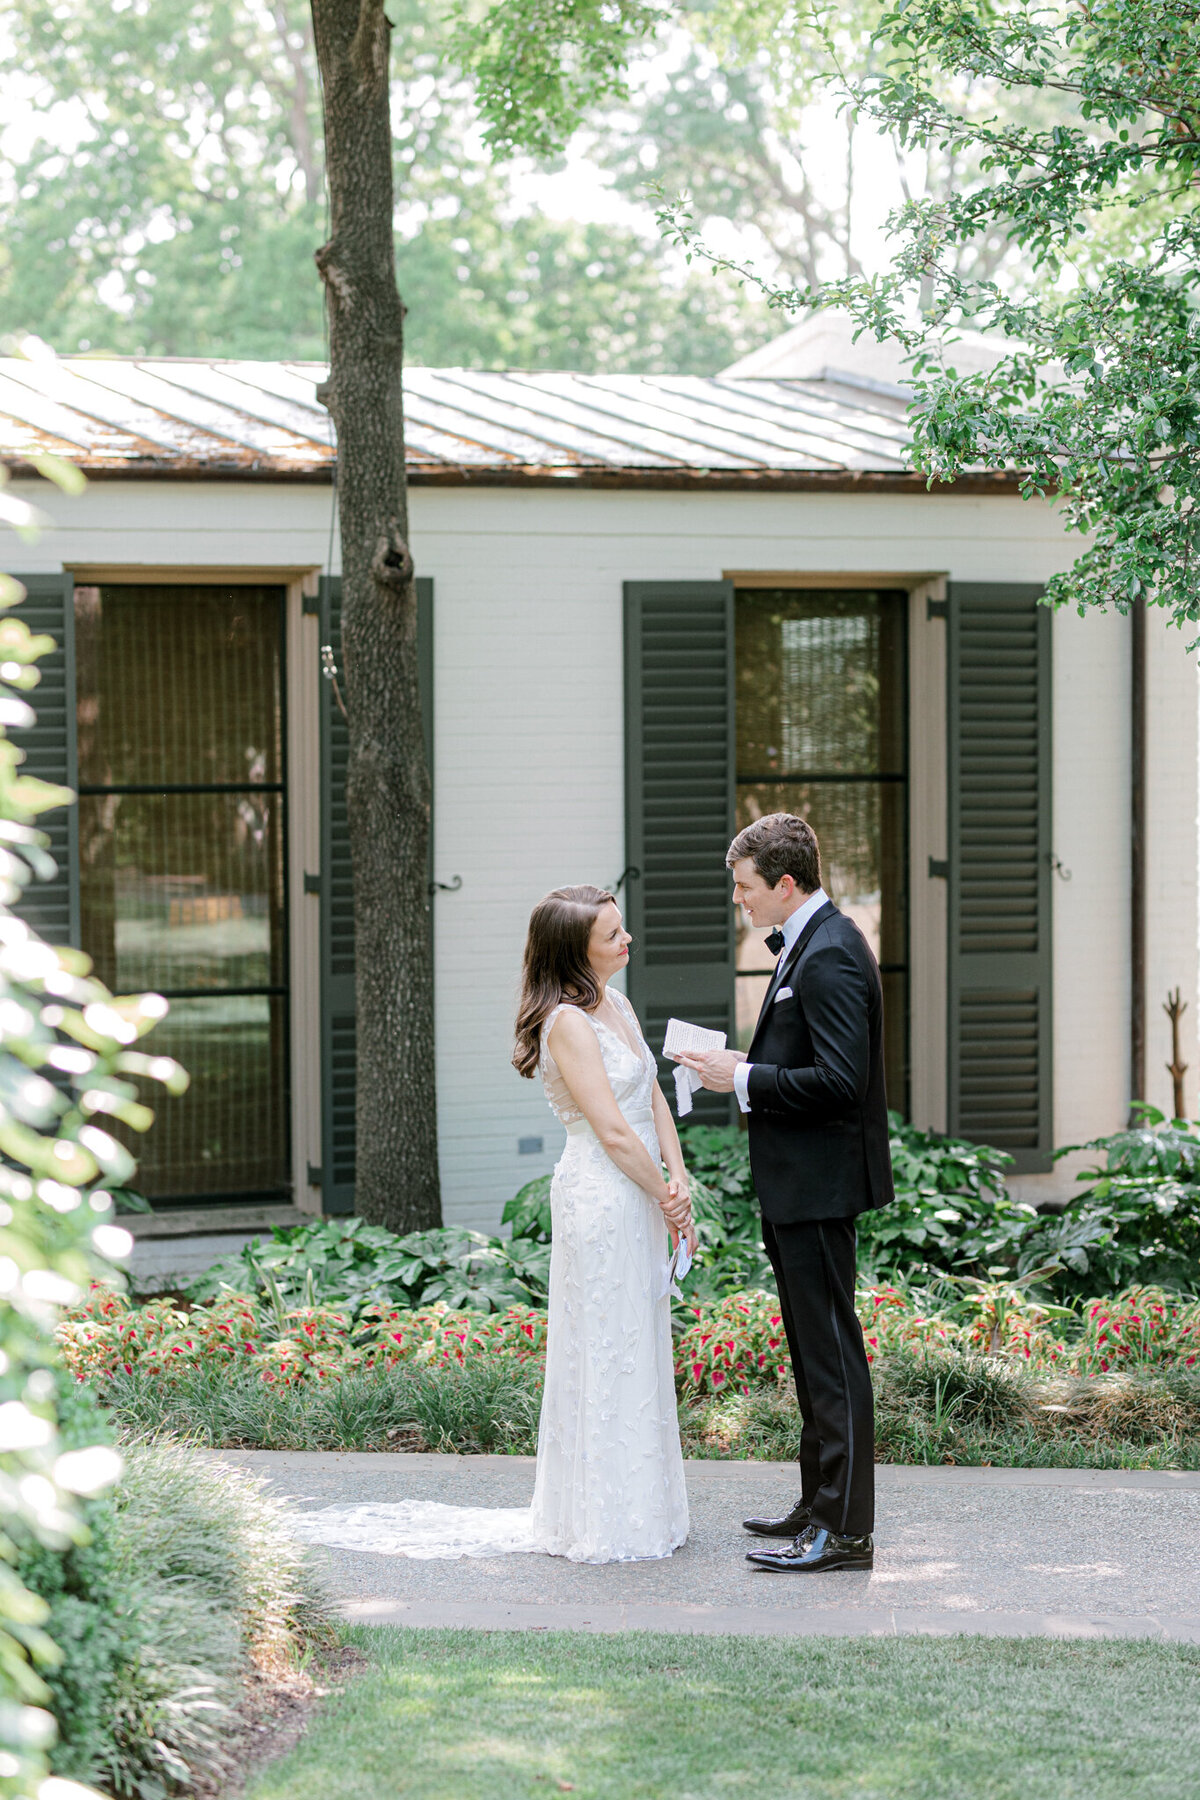 Gena & Matt's Wedding at the Dallas Arboretum | Dallas Wedding Photographer | Sami Kathryn Photography-80